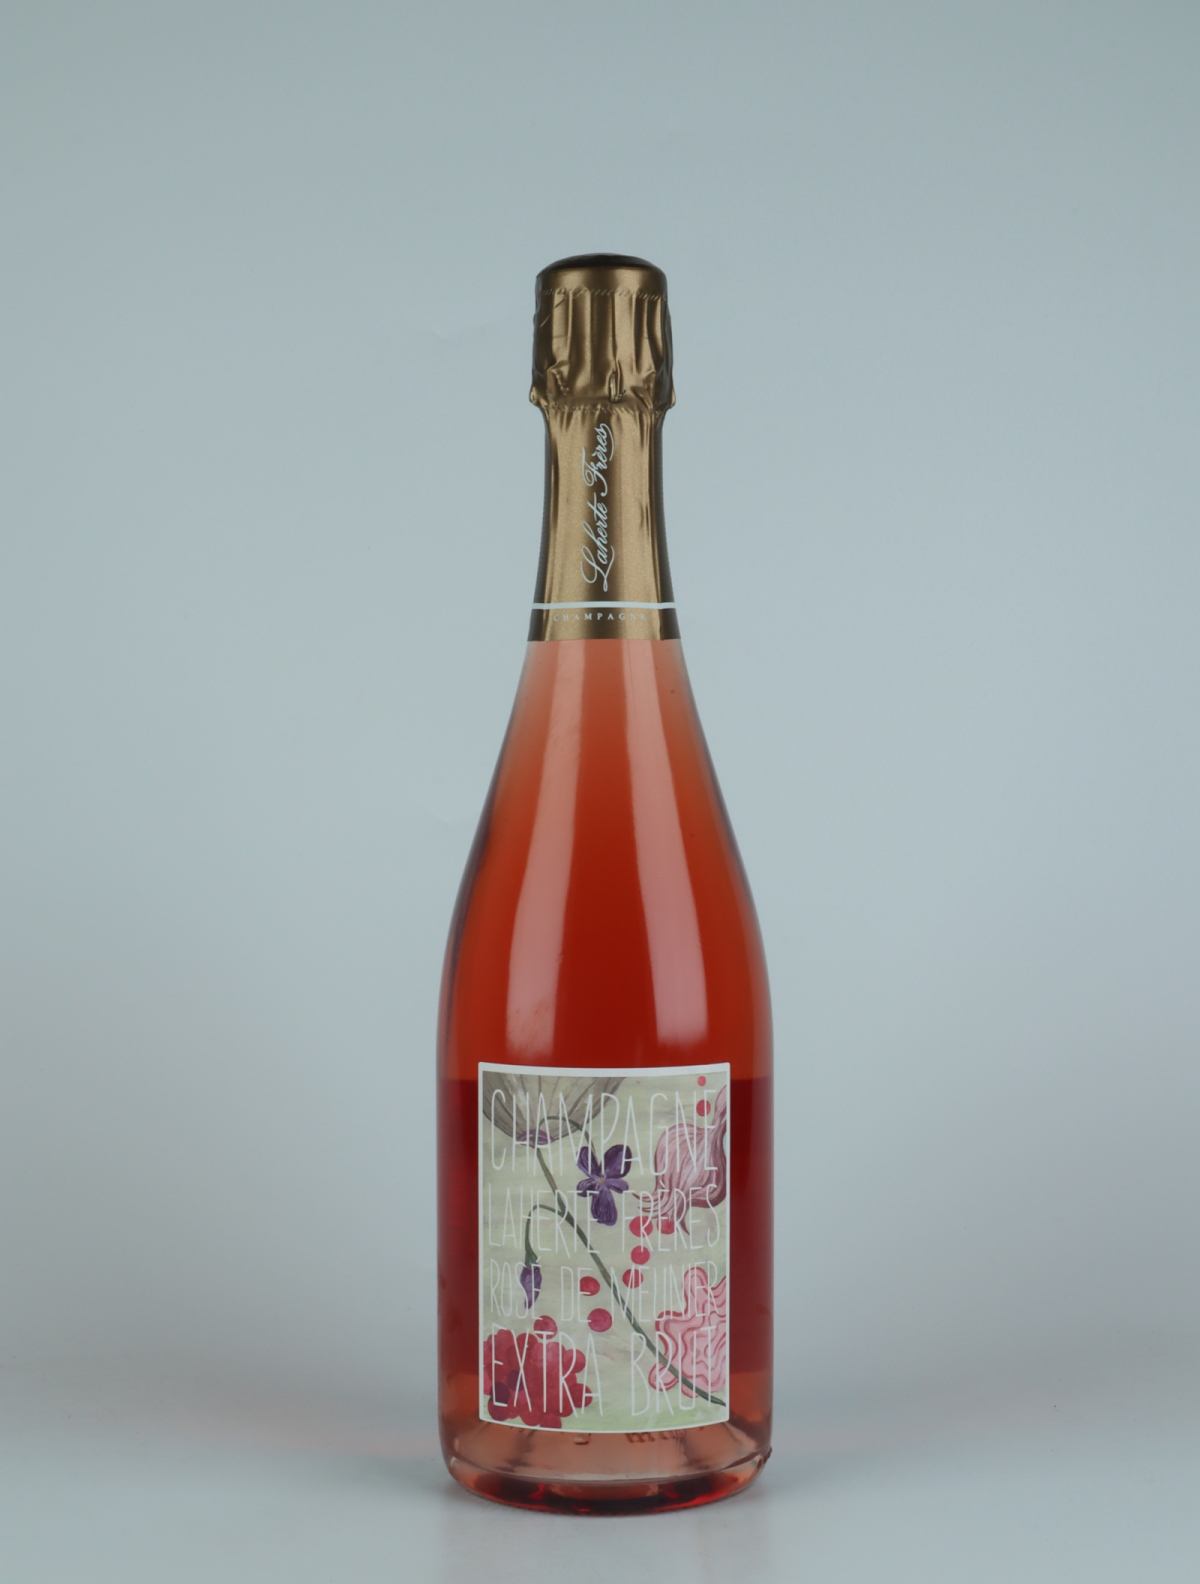 En flaske N.V. Rosé de Meunier Mousserende fra Laherte Frères, Champagne i Frankrig